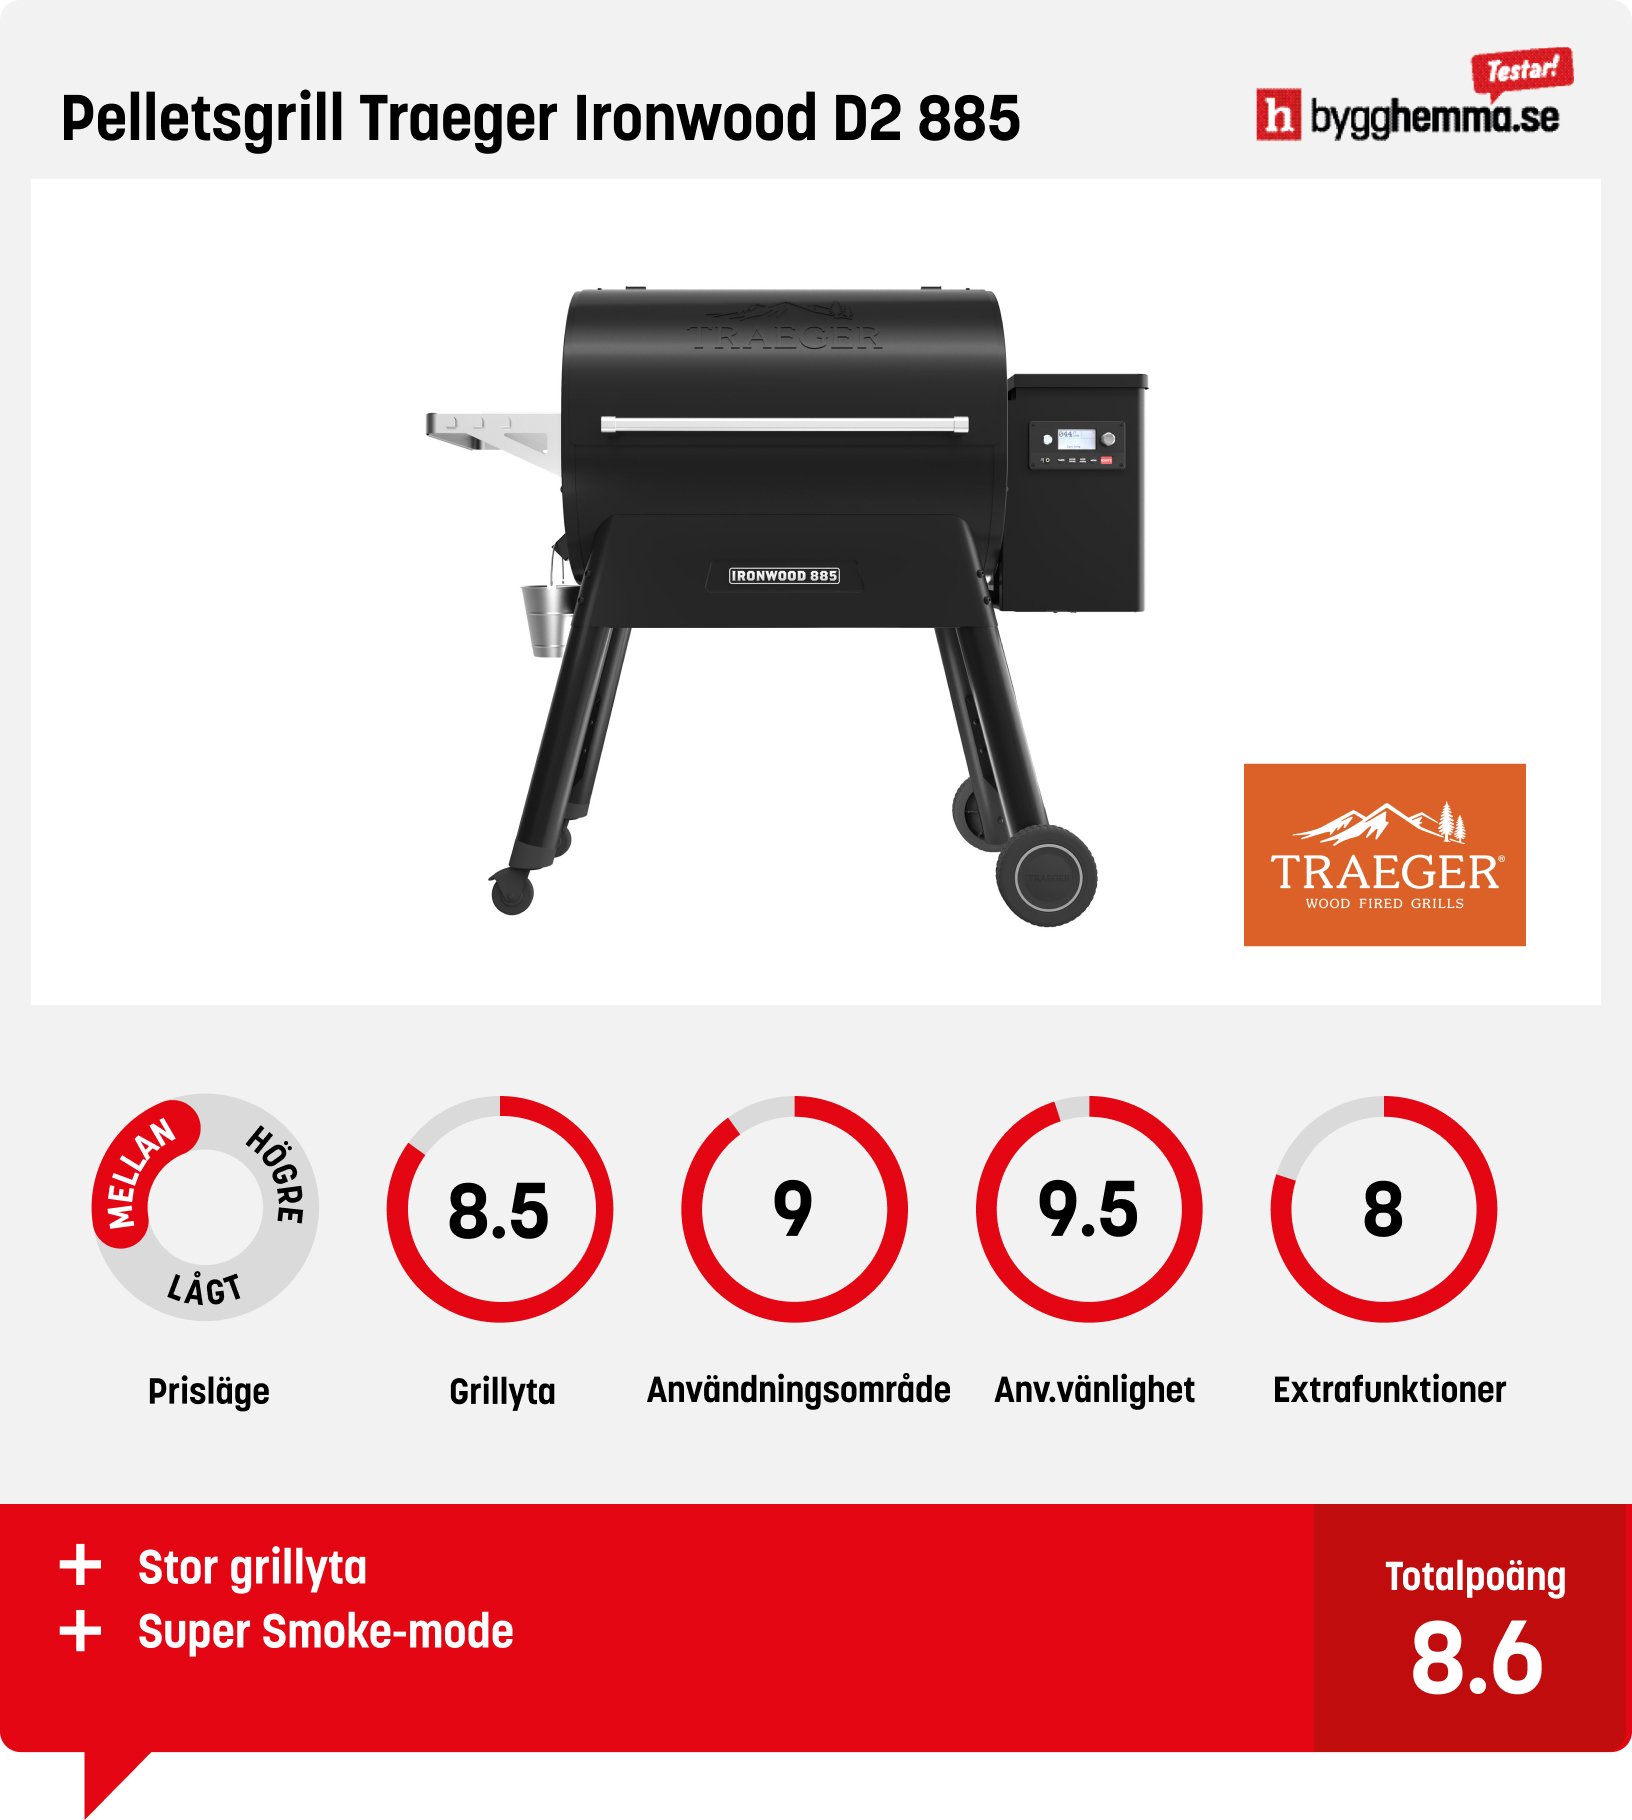 Pelletsgrill test - Pelletsgrill Traeger Ironwood D2 885